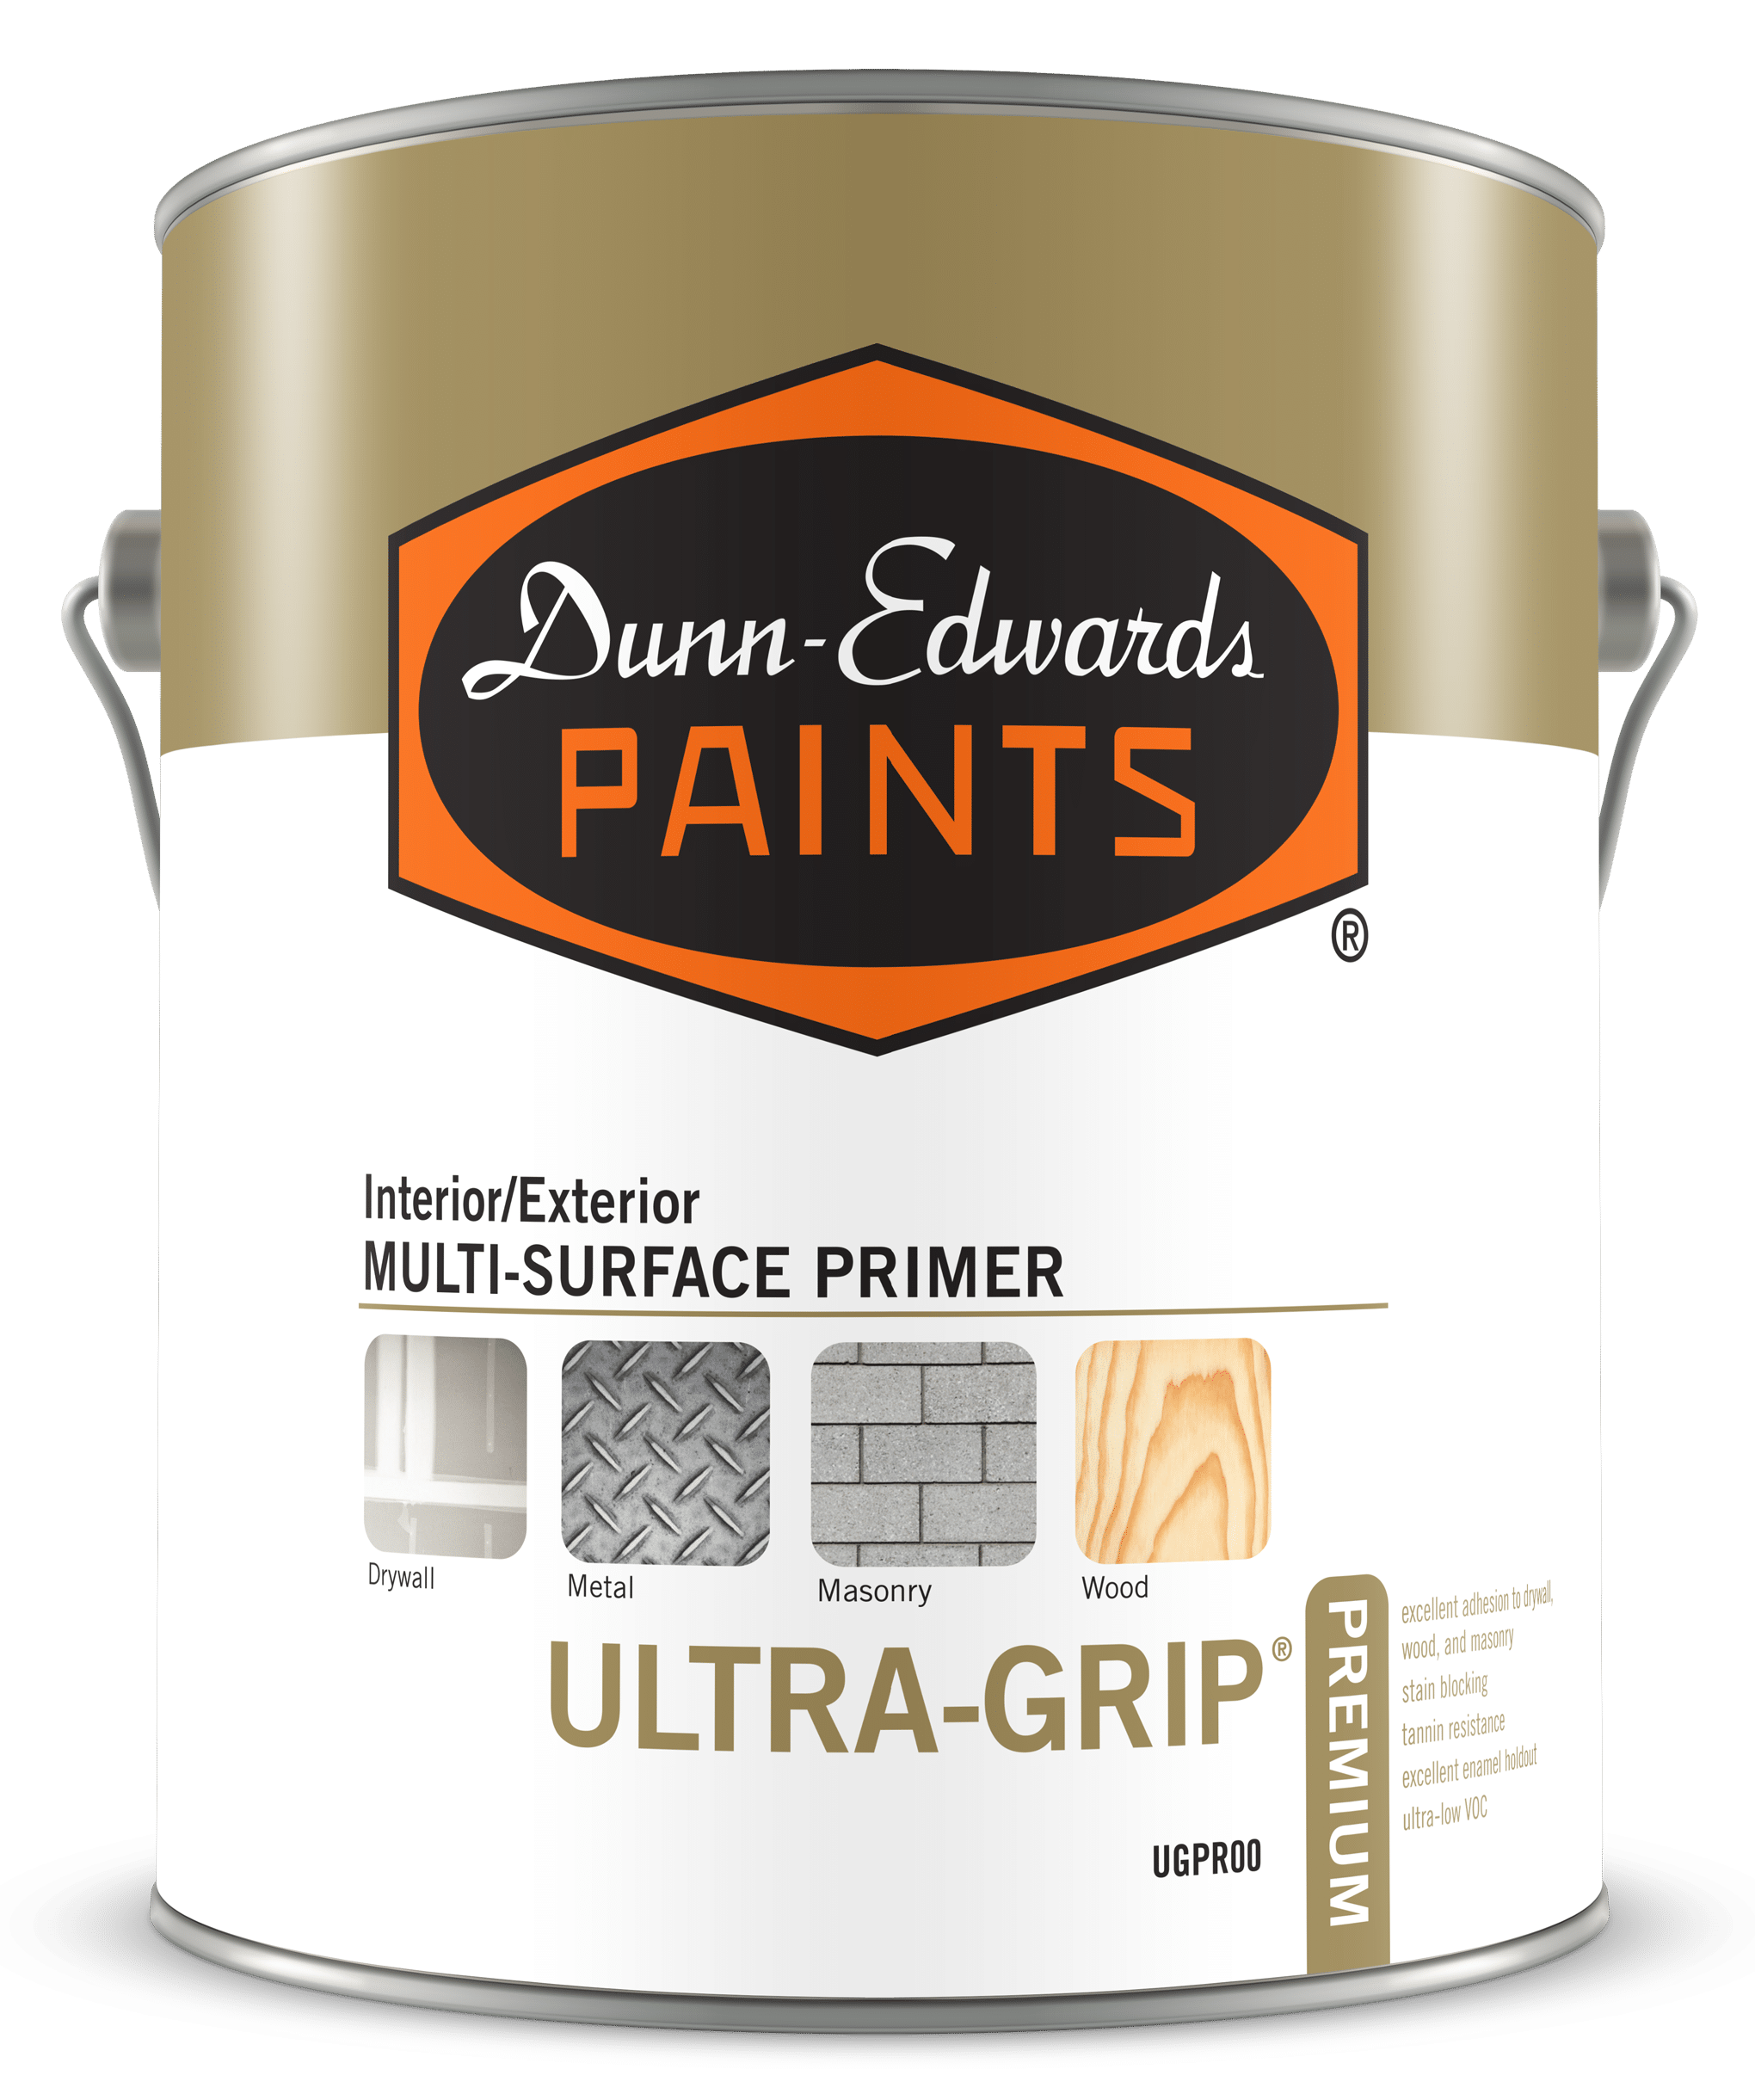 ULTRA-GRIP Premium Interior/Exterior Multi-Surface Primer Can